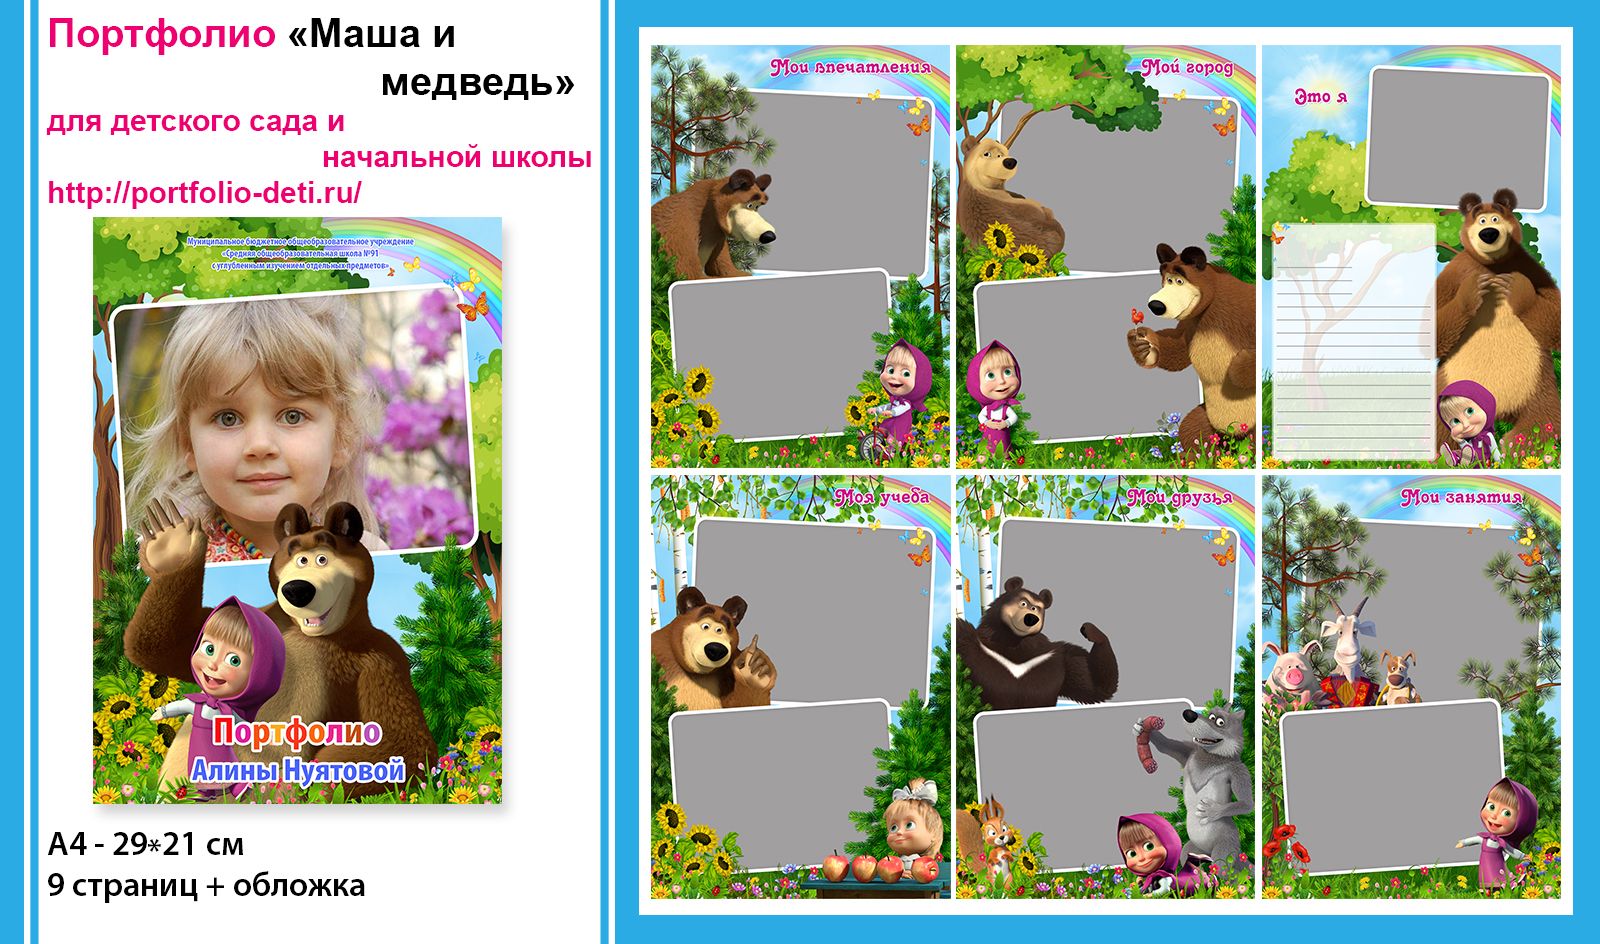 Портфолио для детского сада Маша и медведь